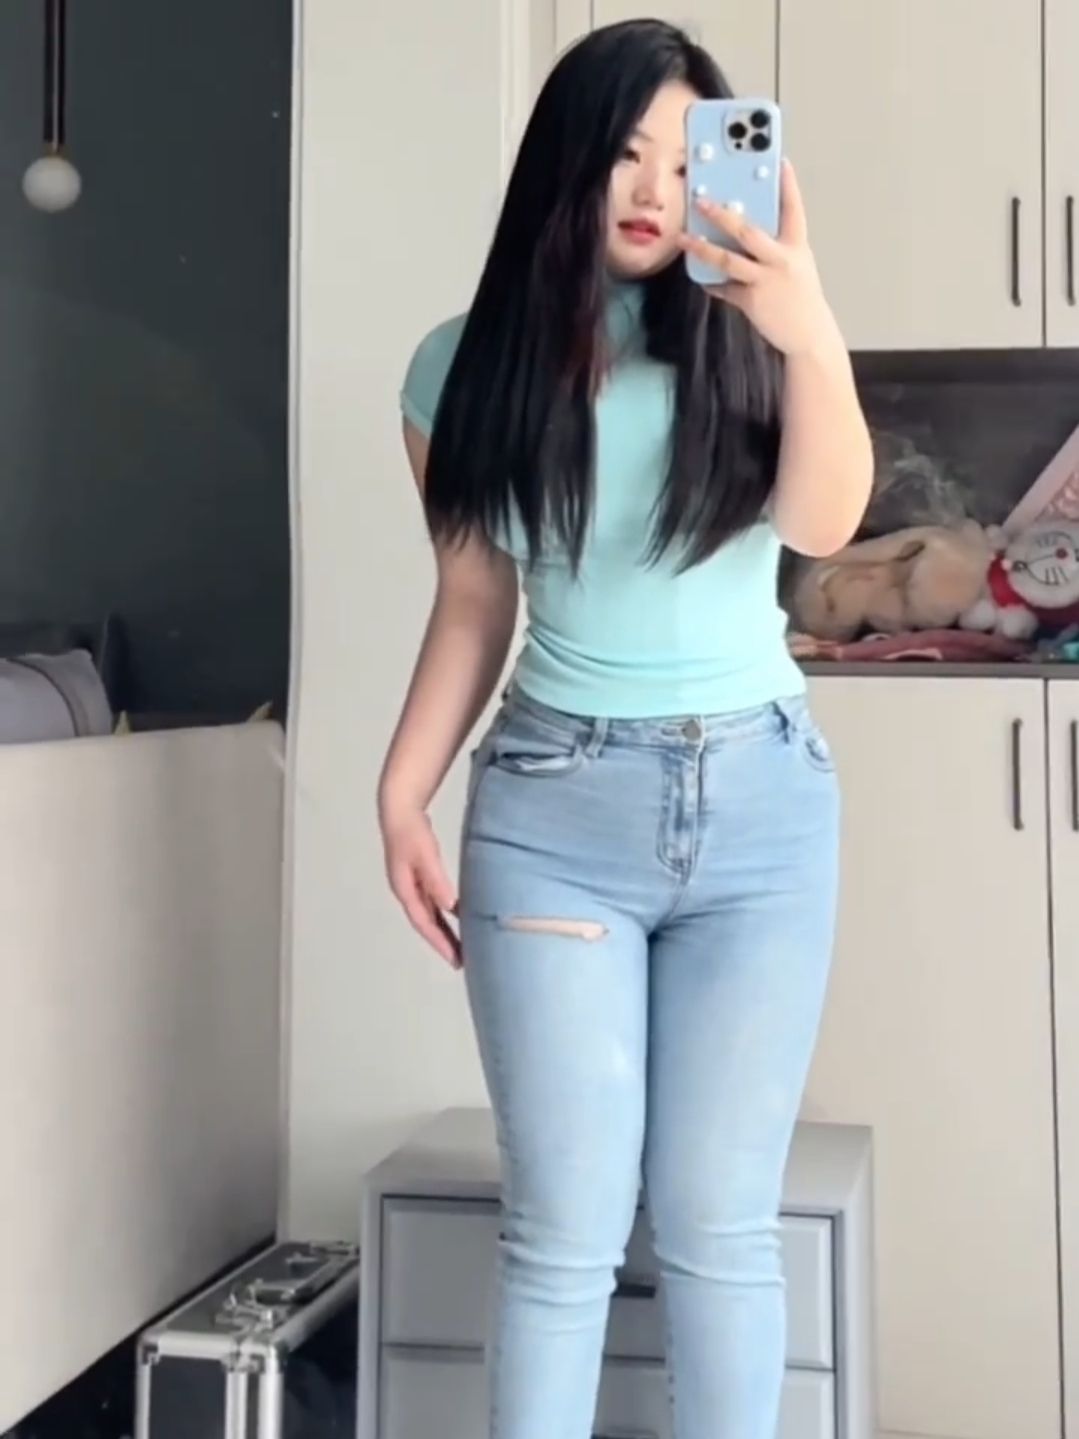 [视频]丰满的牛仔裤美女